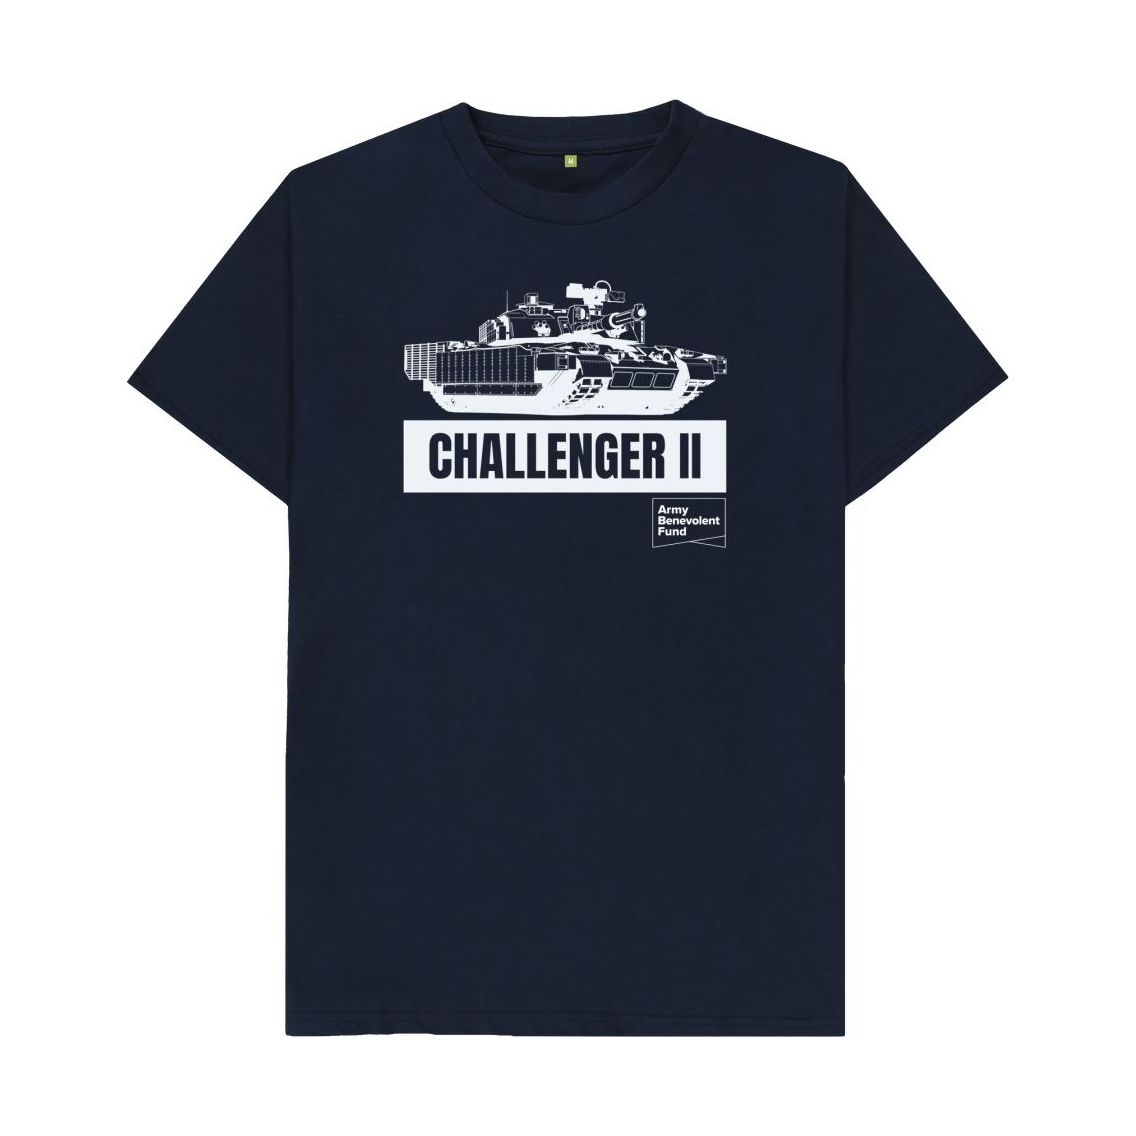 Challenger II Organic T-shirt - Army Benevolent Fund